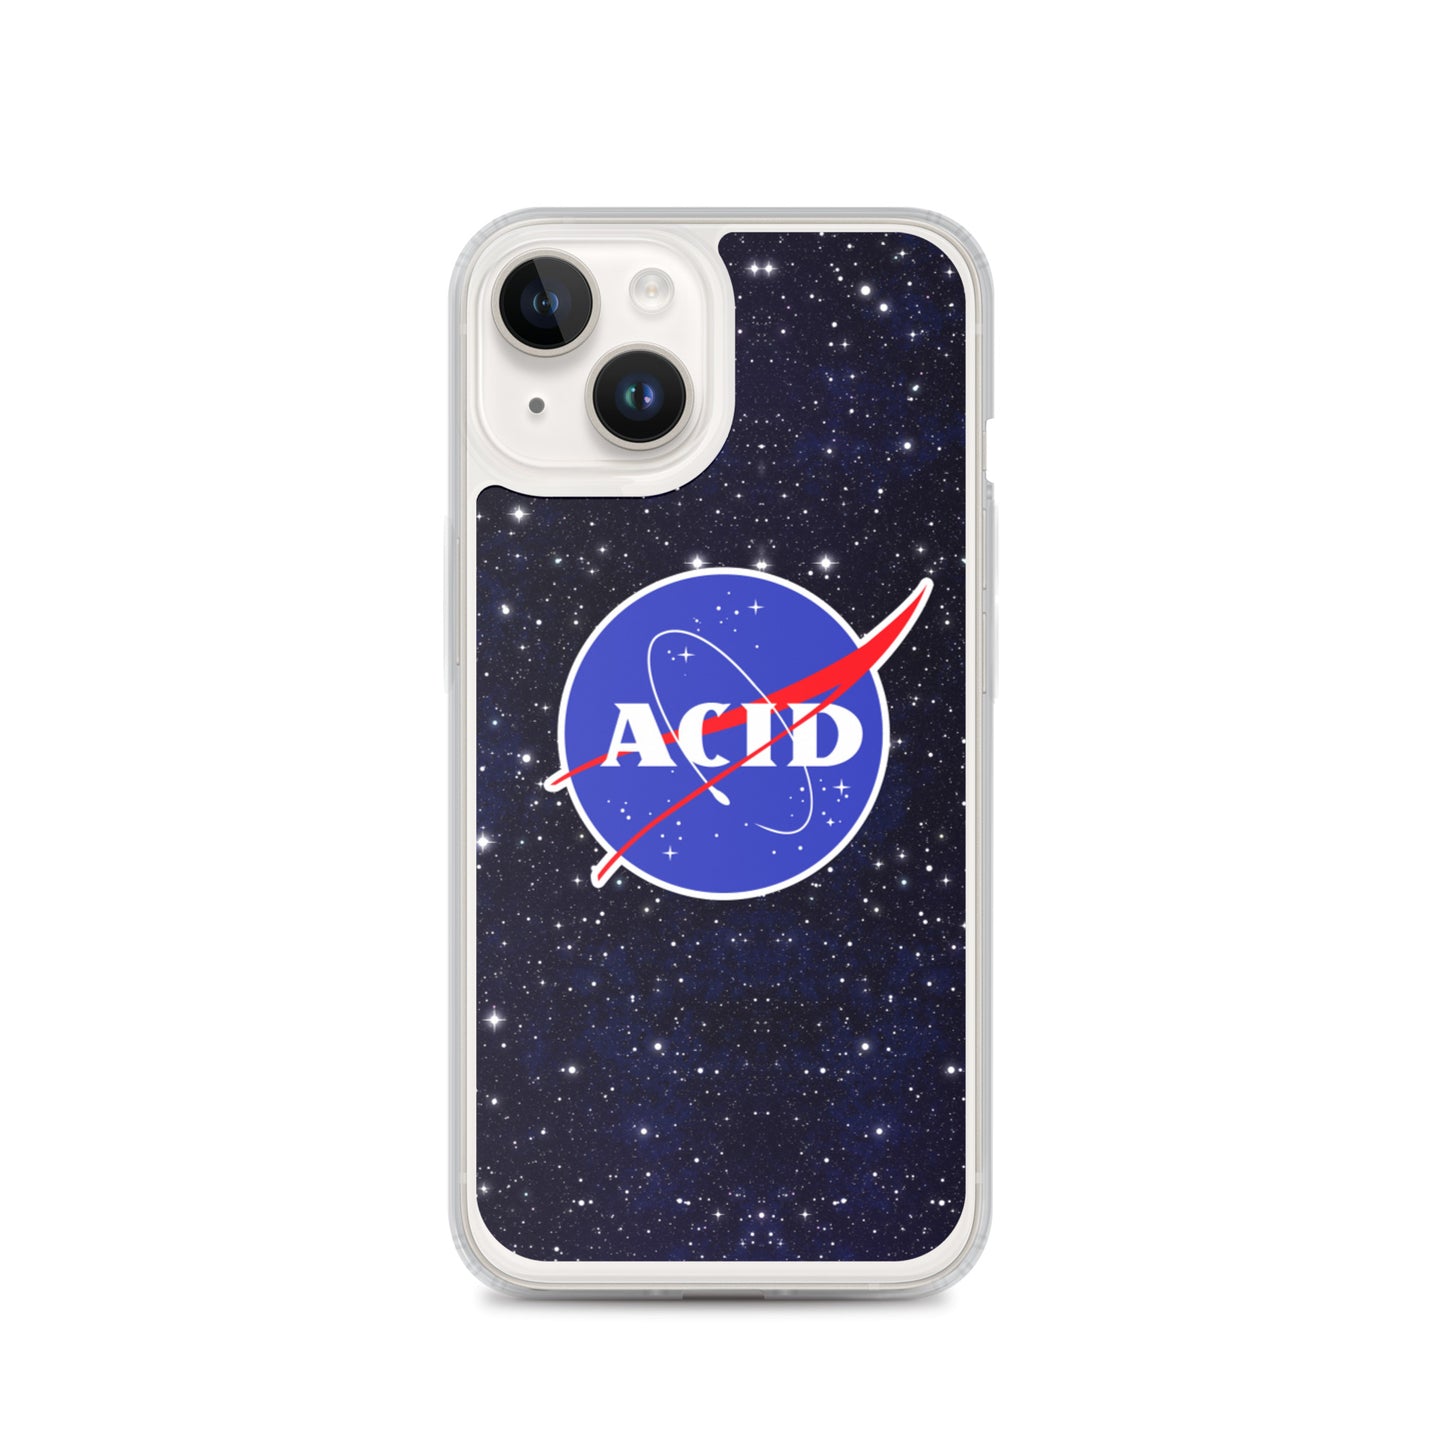 Acid iPhone Case